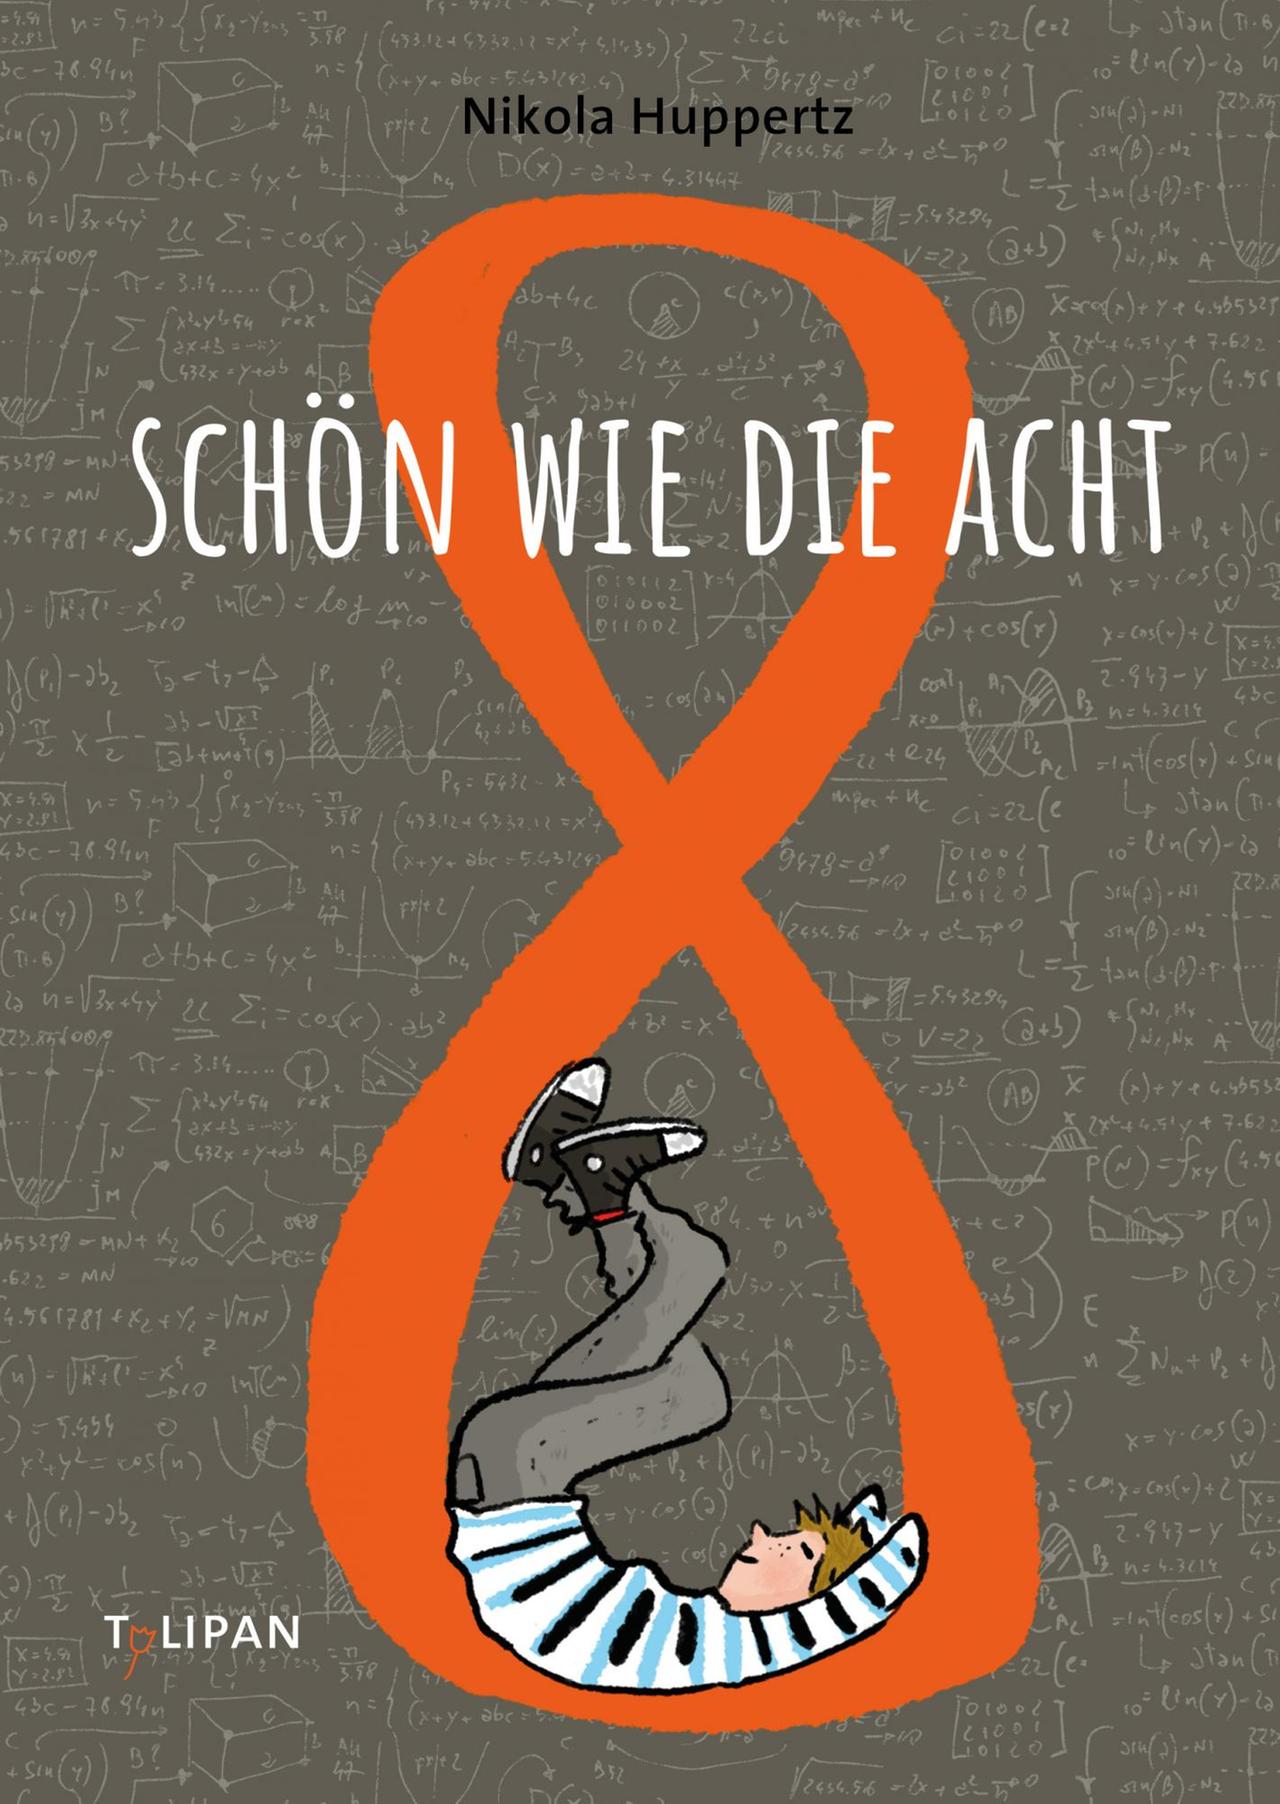 Nikola Huppertz und Barbara Jung (Illustration): "Schön wie die Acht" (Tulipan Verlag)
Buchcover